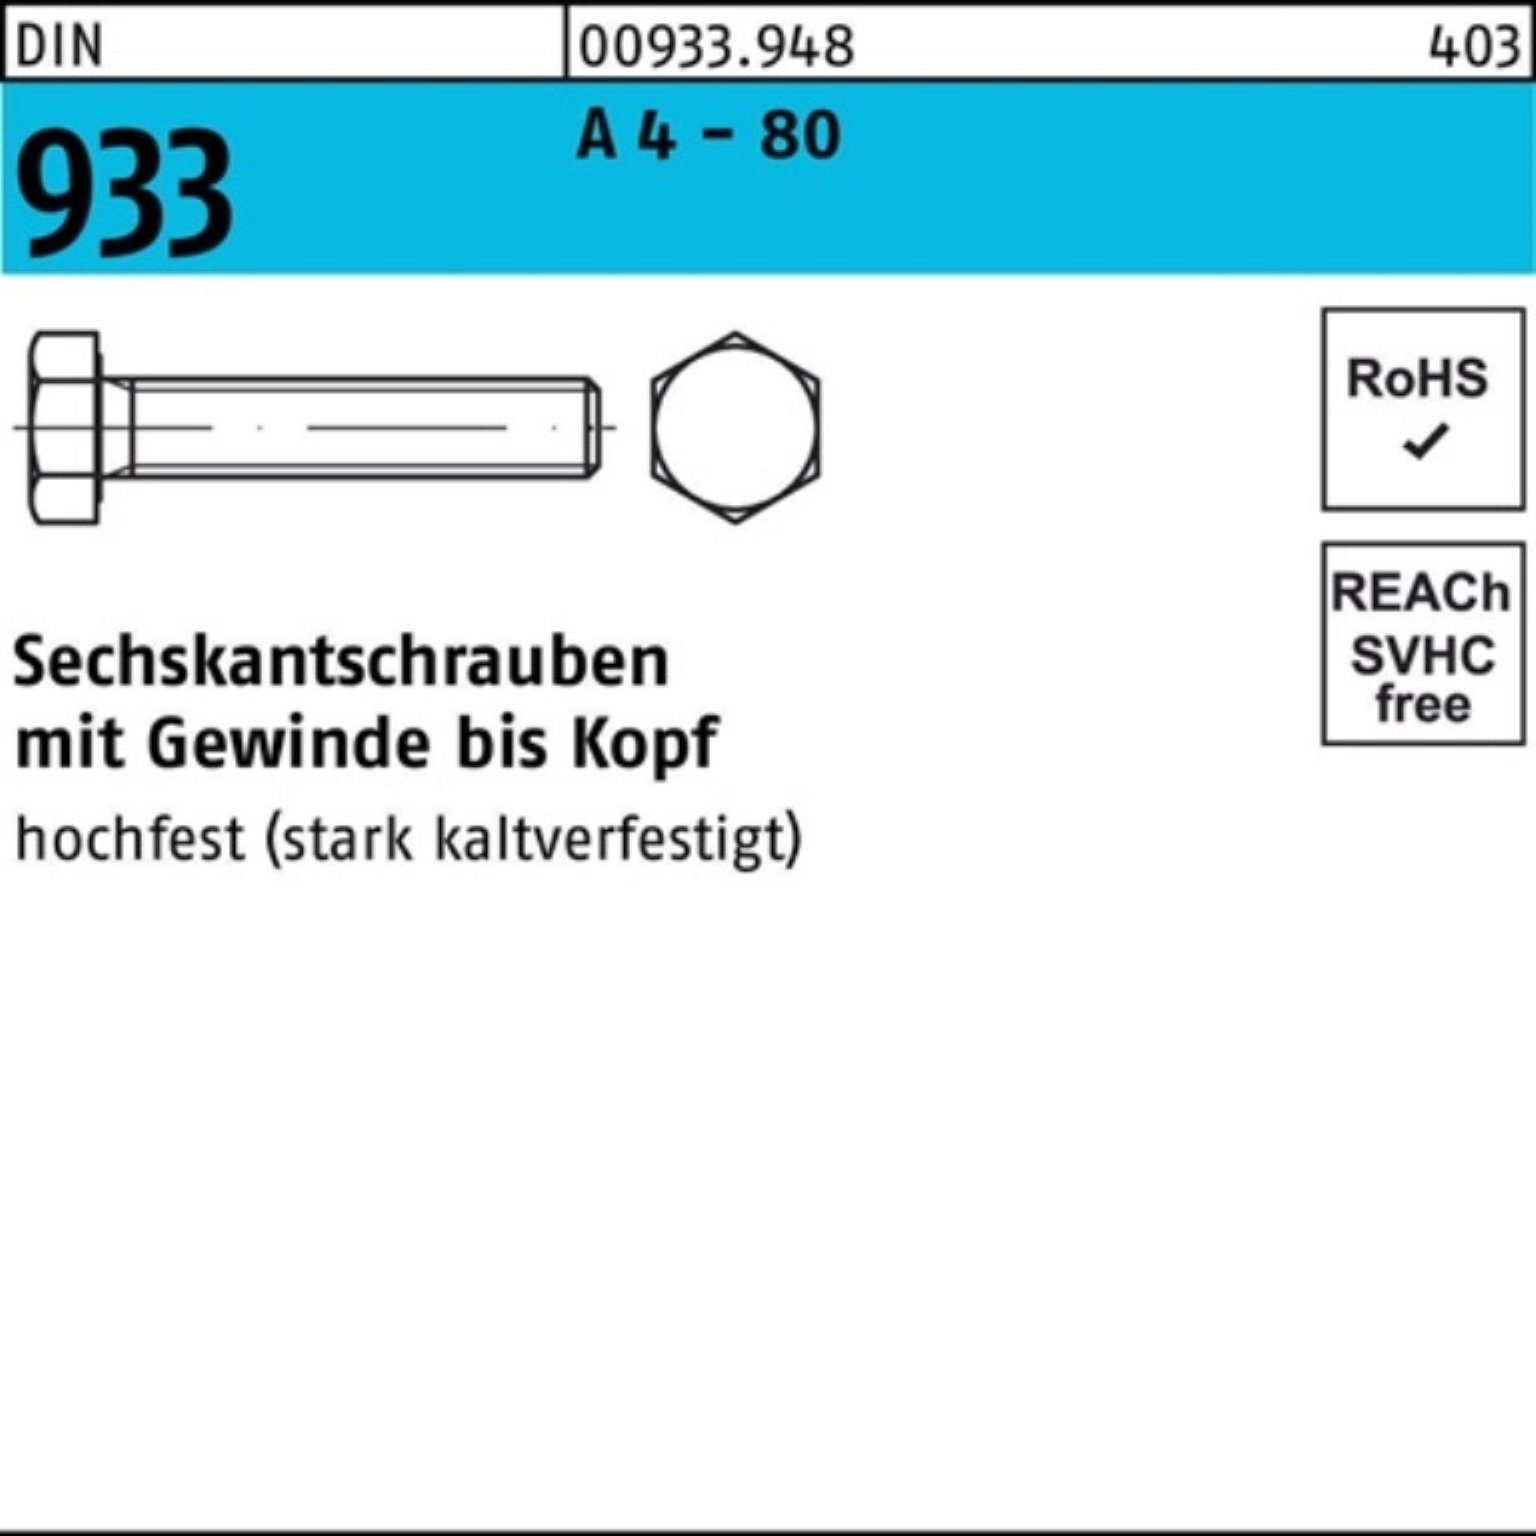 Reyher Sechskantschraube 100er Pack Sechskantschraube DIN 933 VG M8x 100 A 4 - 80 50 Stück DIN